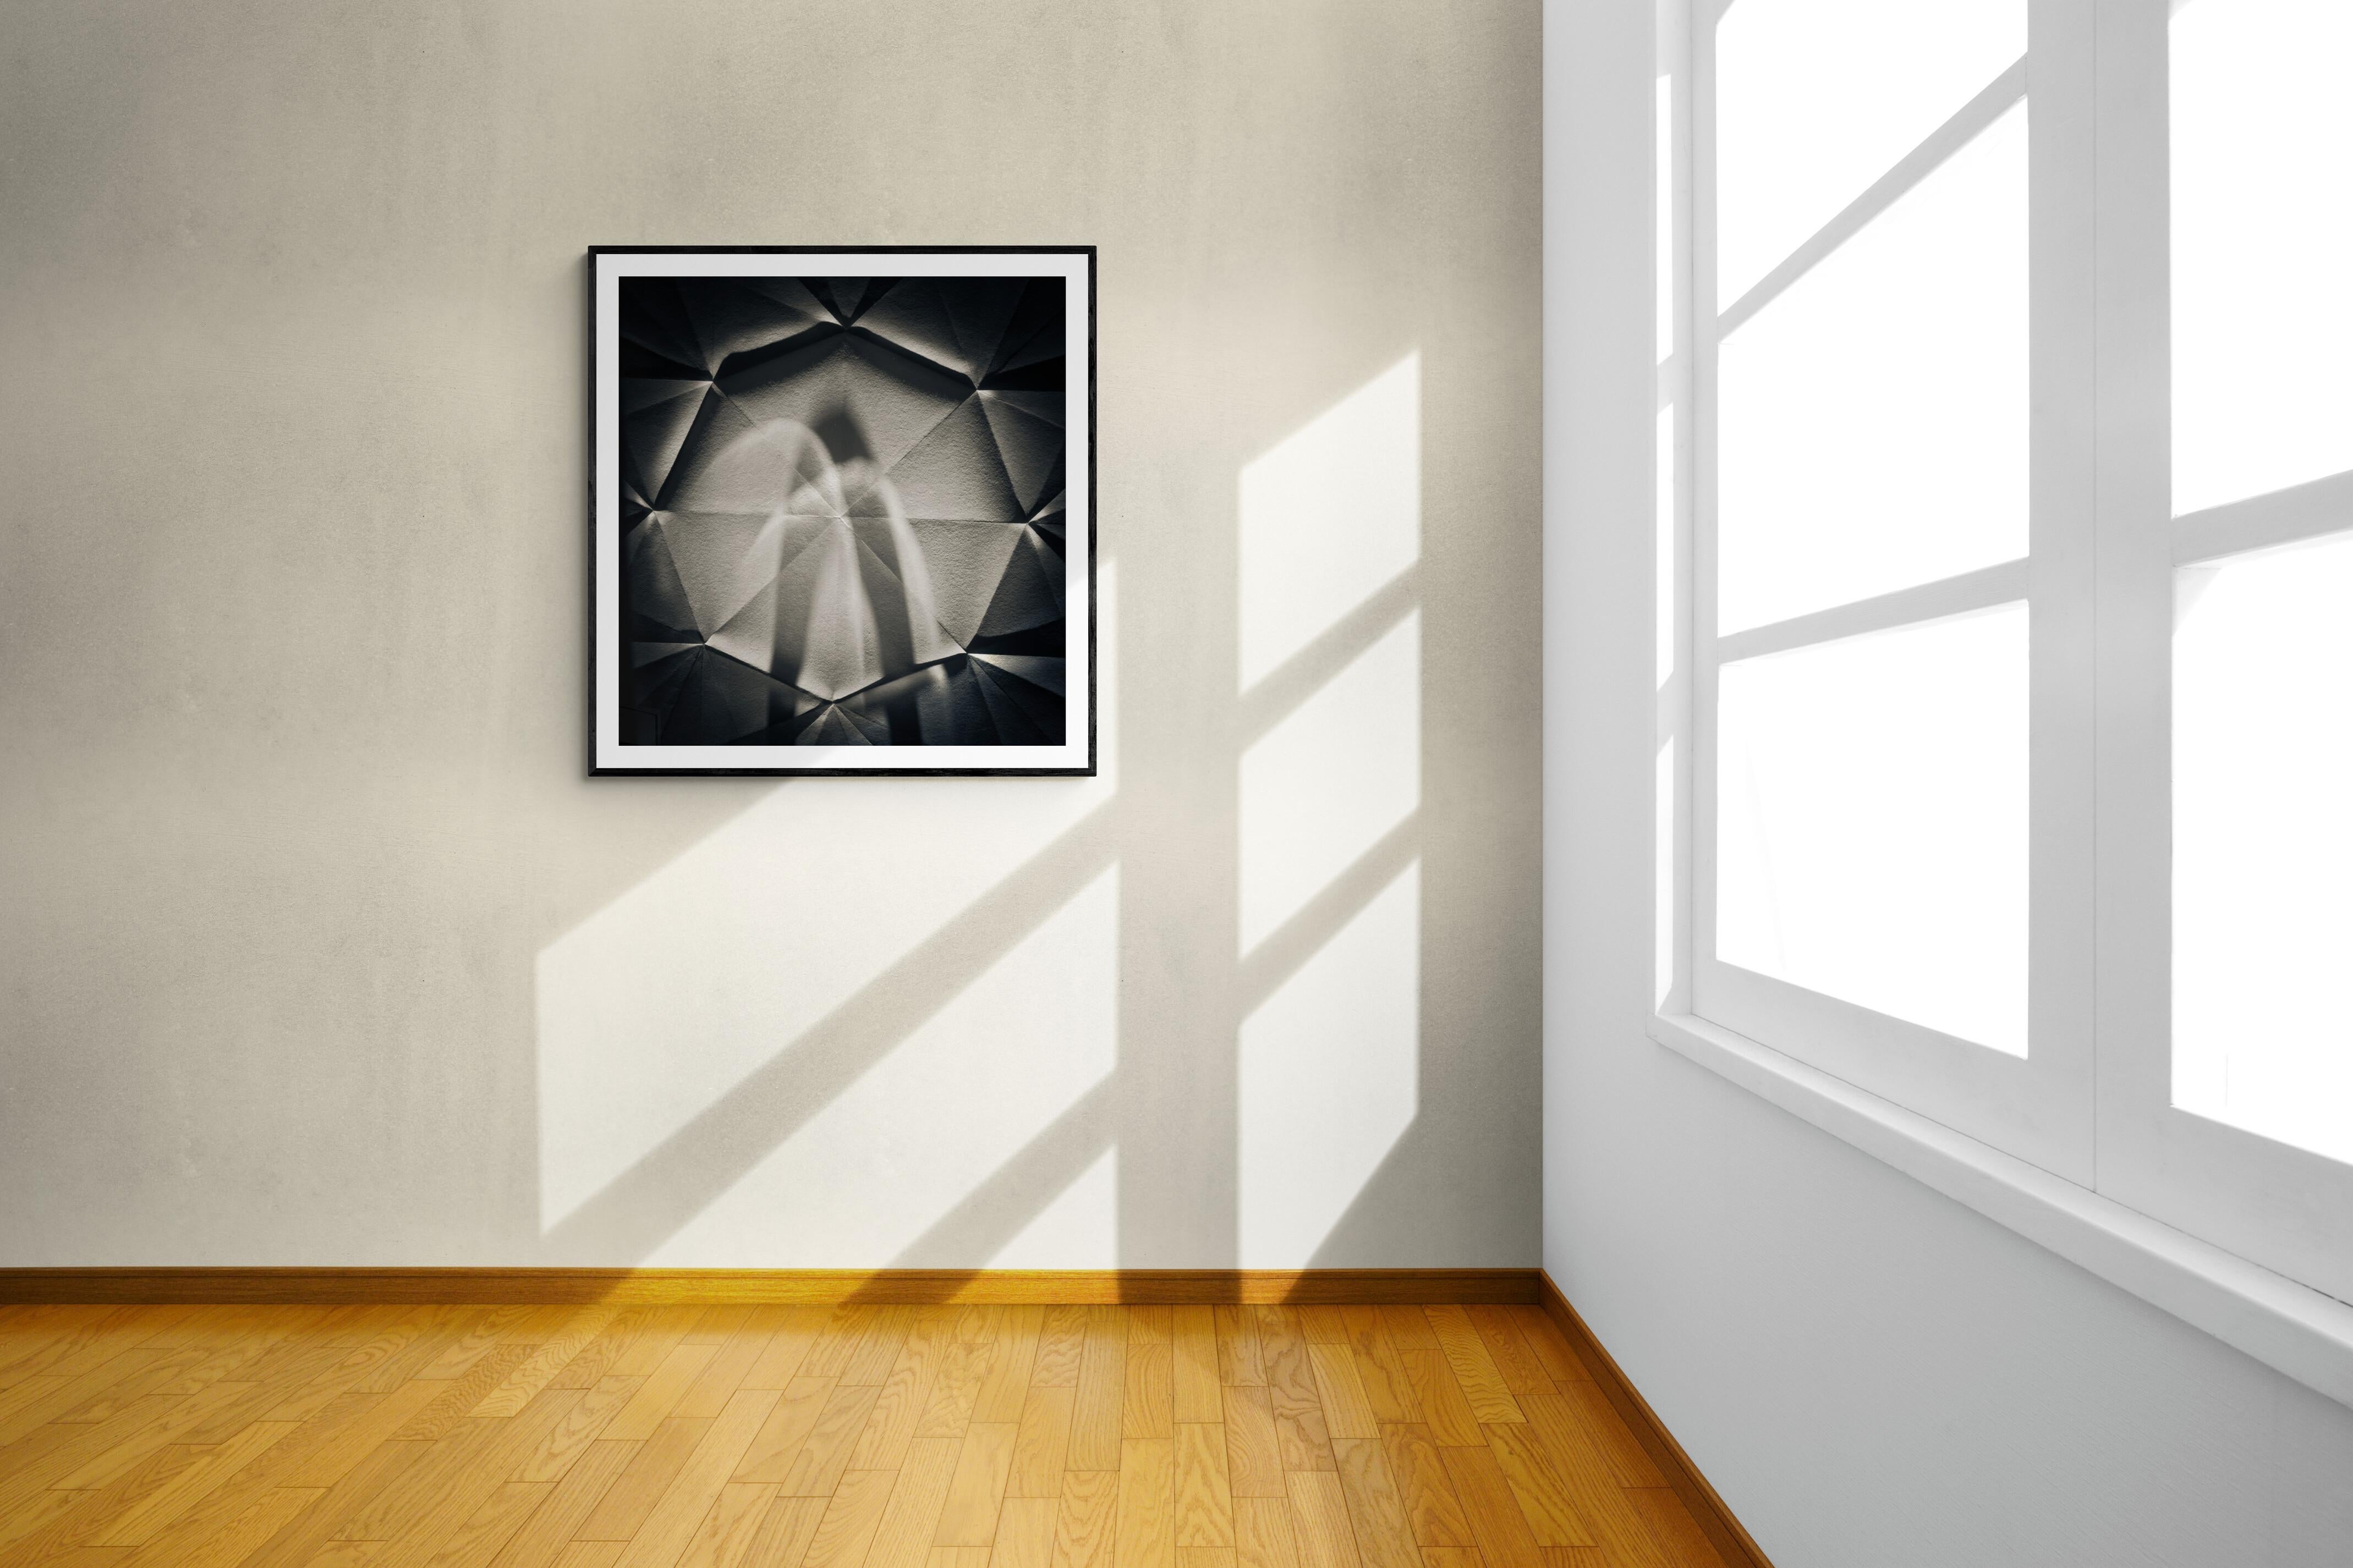  Limitierte Auflage 1 / 10 Schwarz-Weiß-Fotografie - Origami Abstract #73

Untitled #73 aus der Serie Origami Foldes war bereits in mehreren Museumsausstellungen und Unternehmenssammlungen zu sehen.

Der Astrophysiker Koryo Miura schuf 1995 durch